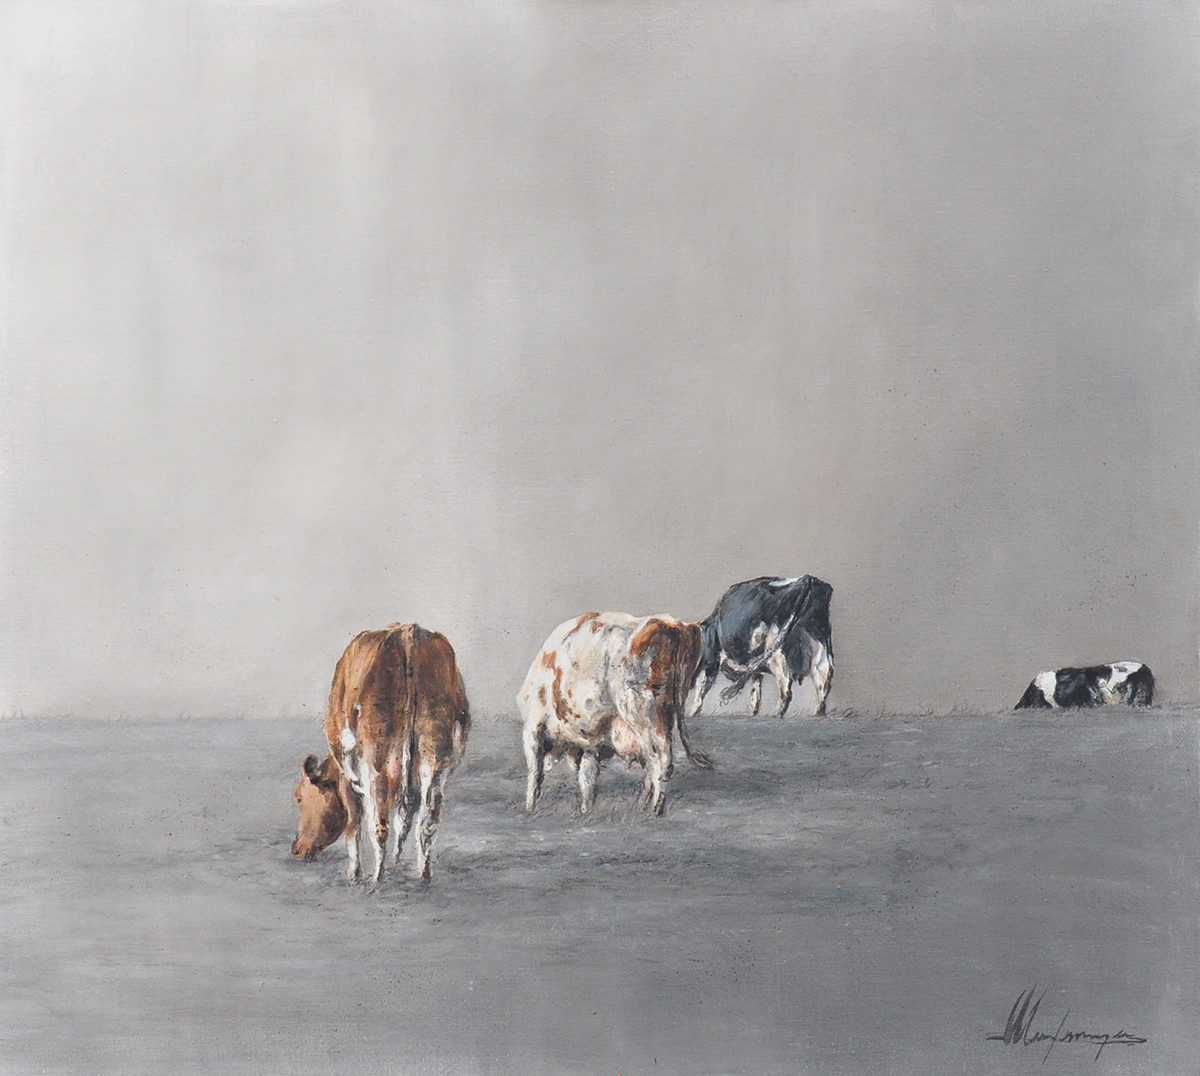 Annabelle Lanfermeijer + Grazende koeien